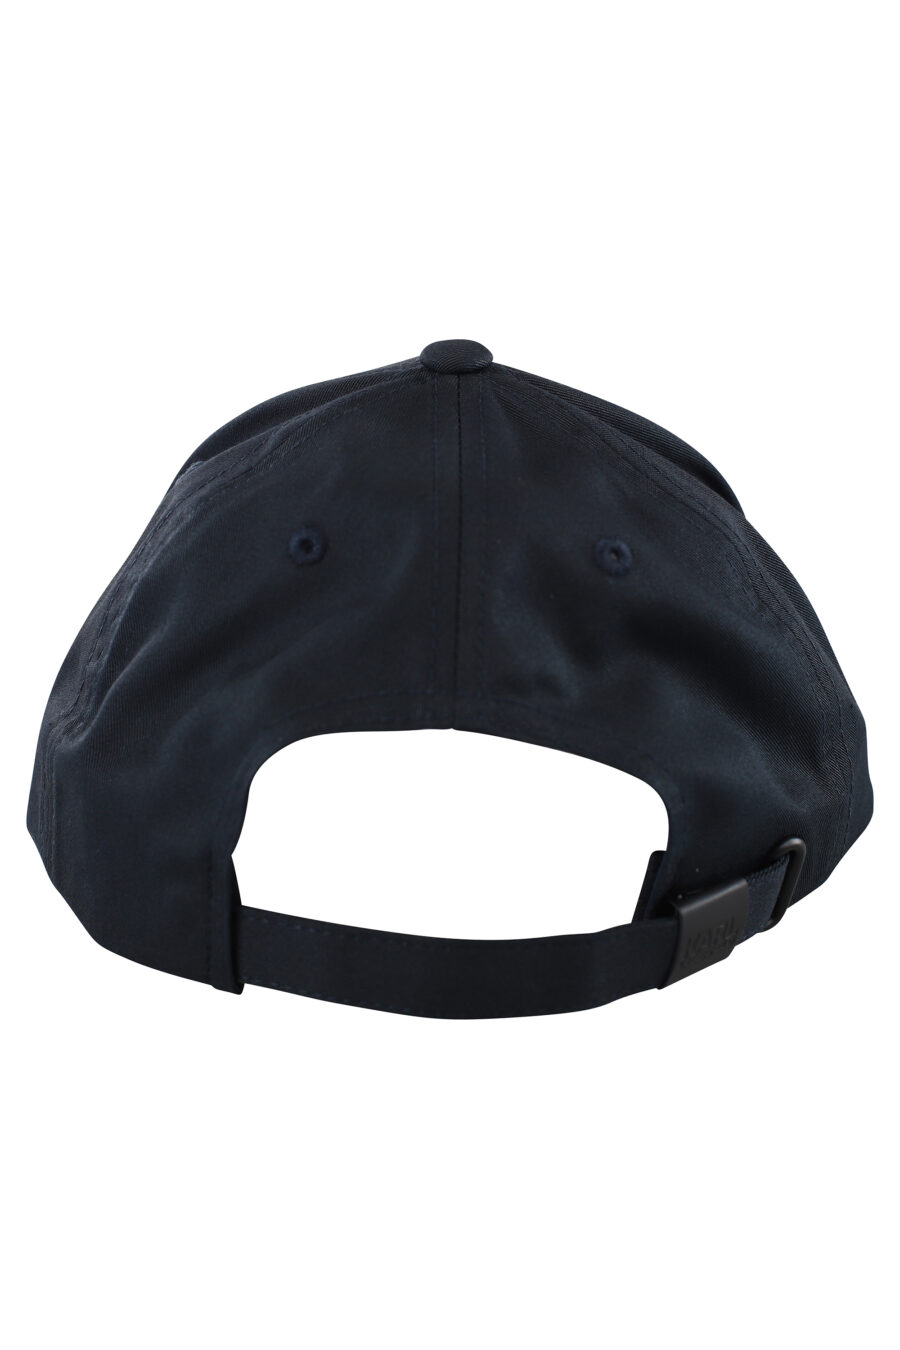 Gorra azul oscuro con logo monocromático - IMG 7058